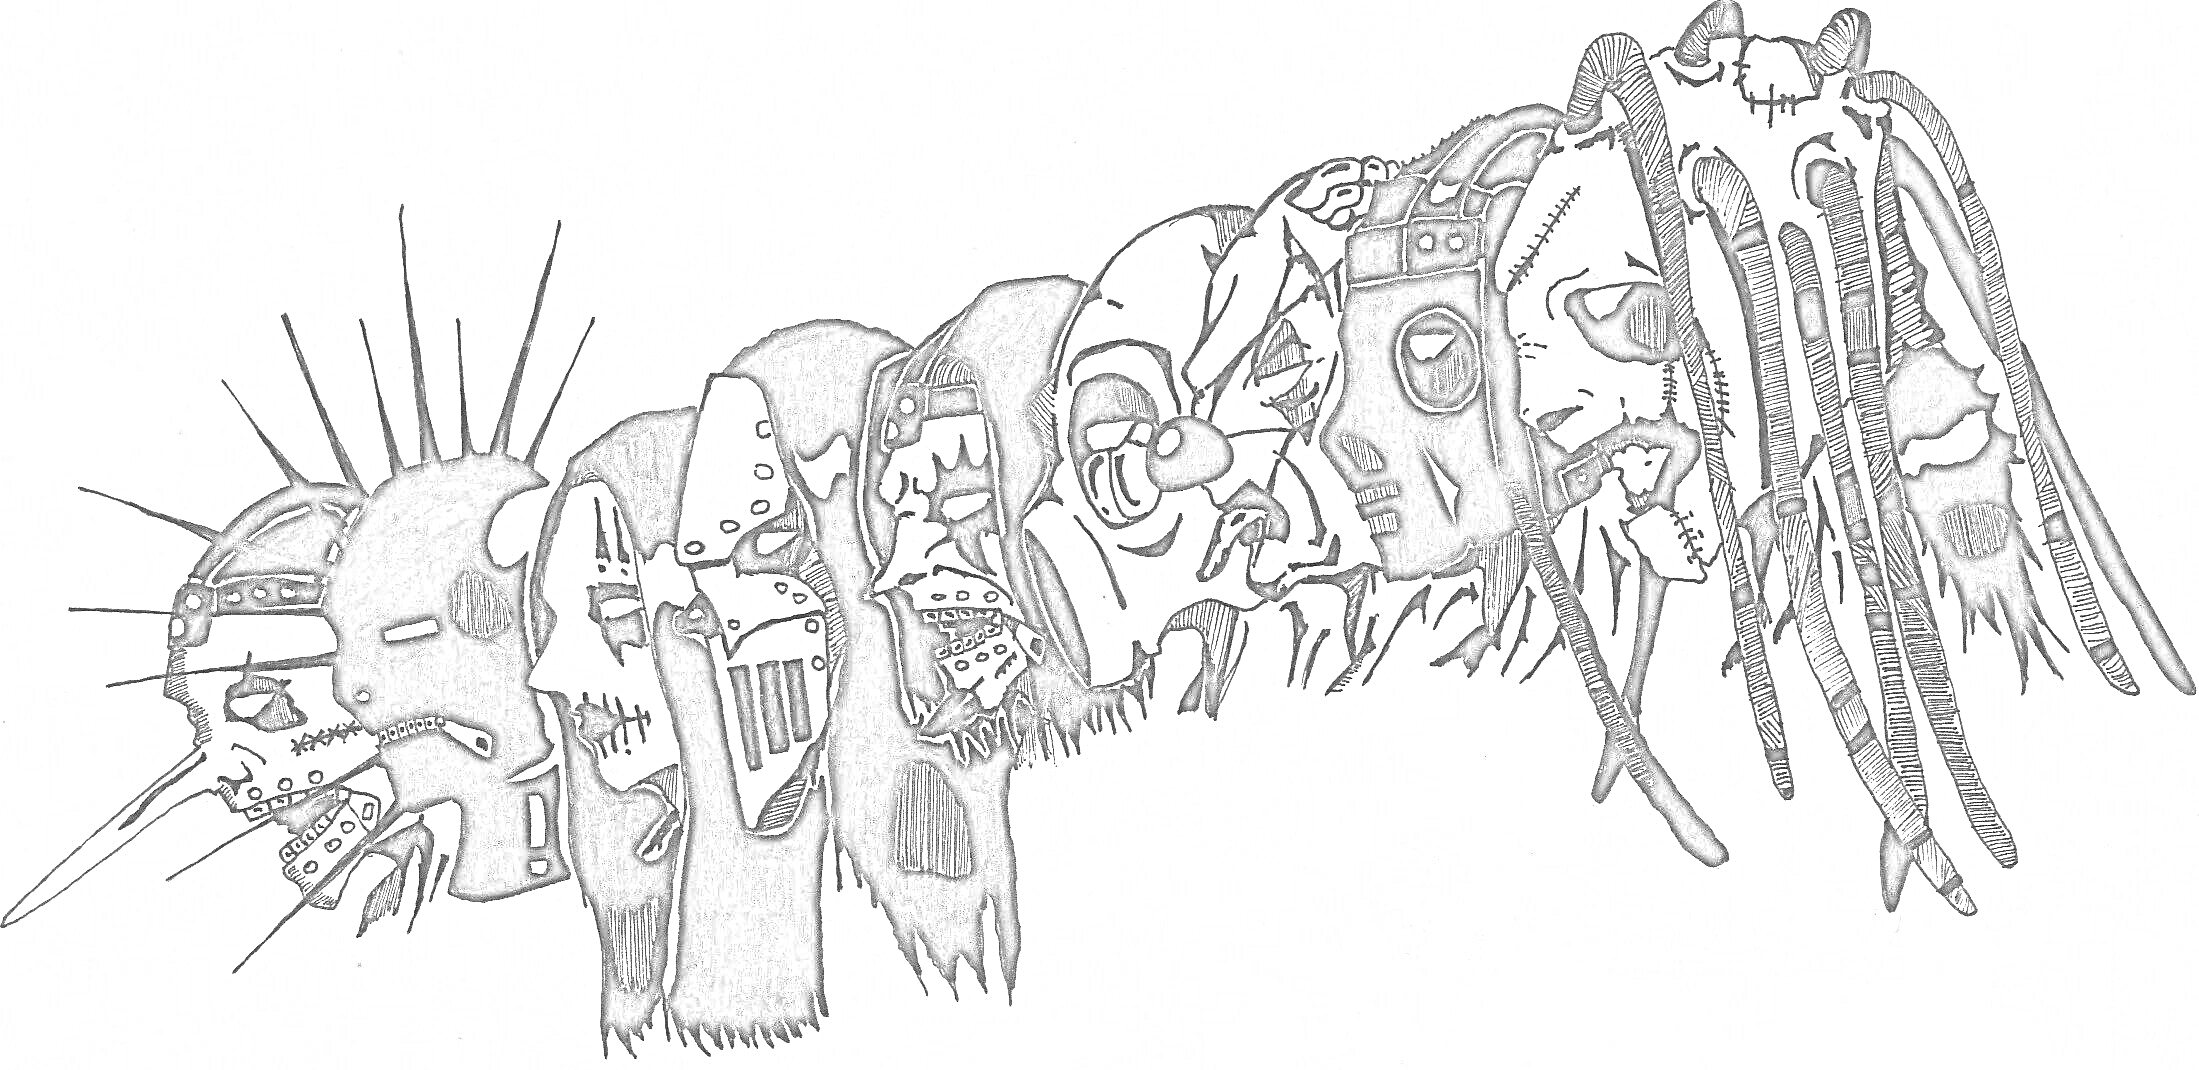 Раскраска Маски участников группы «Слипкнот» выстроенные в ряд, различные подробные узоры и элементы масок (шипы, ремни, длинные волосы, длинные отростки и т.д.)